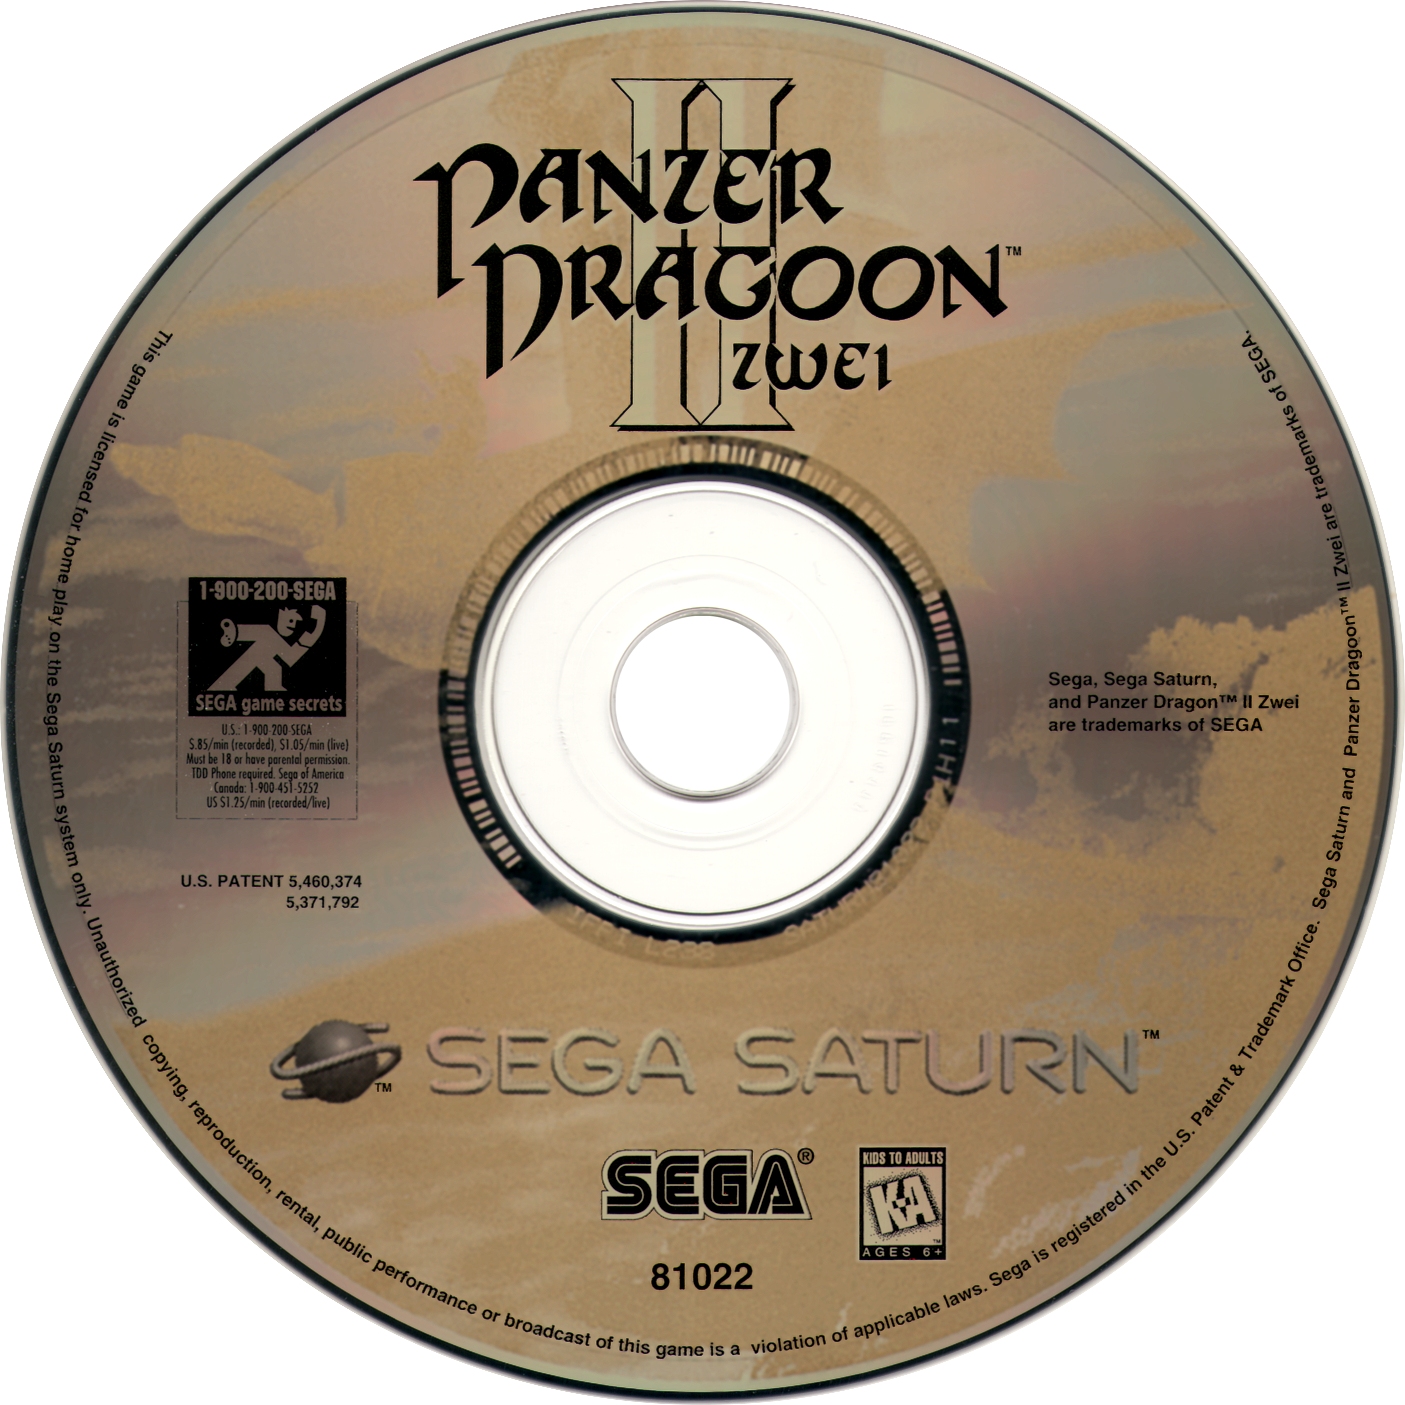 download panzer dragoon ii zwei remake